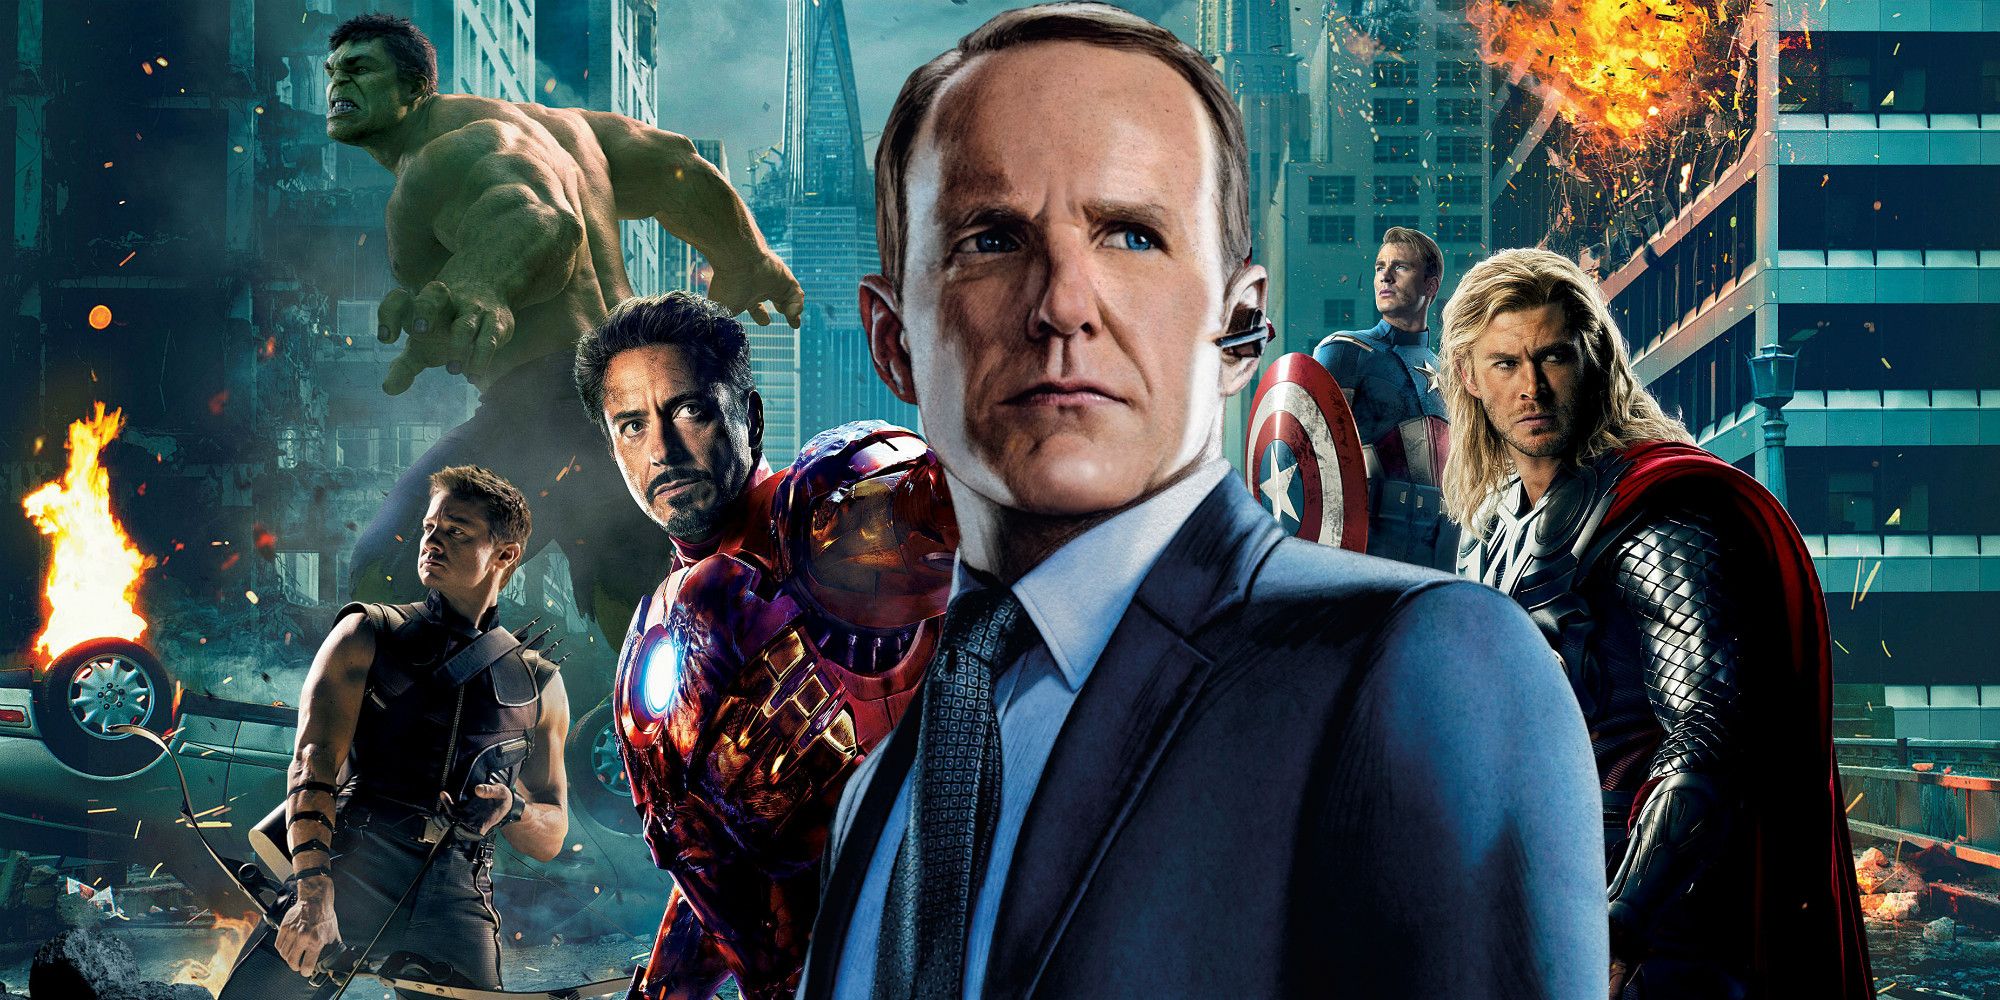 Marvel's 'The Avengers': Clark Gregg On The Scene Where Agent